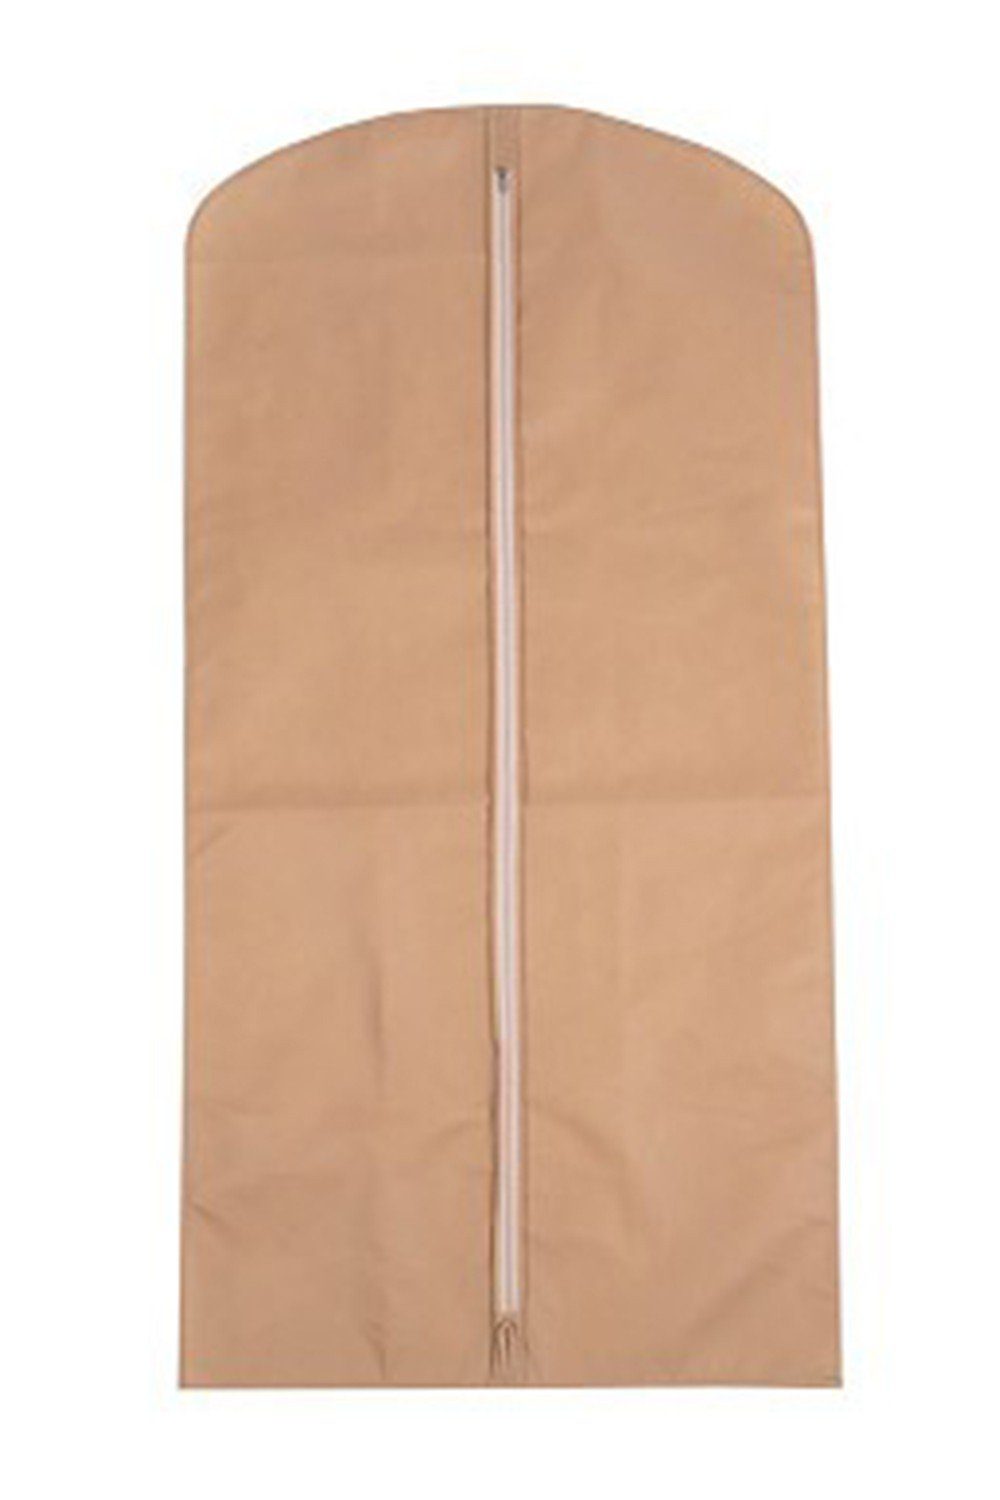 Diademita Kleidersack Kleiderhülle 65 x 160 cm, Kleidersack, Kleiderbeutel